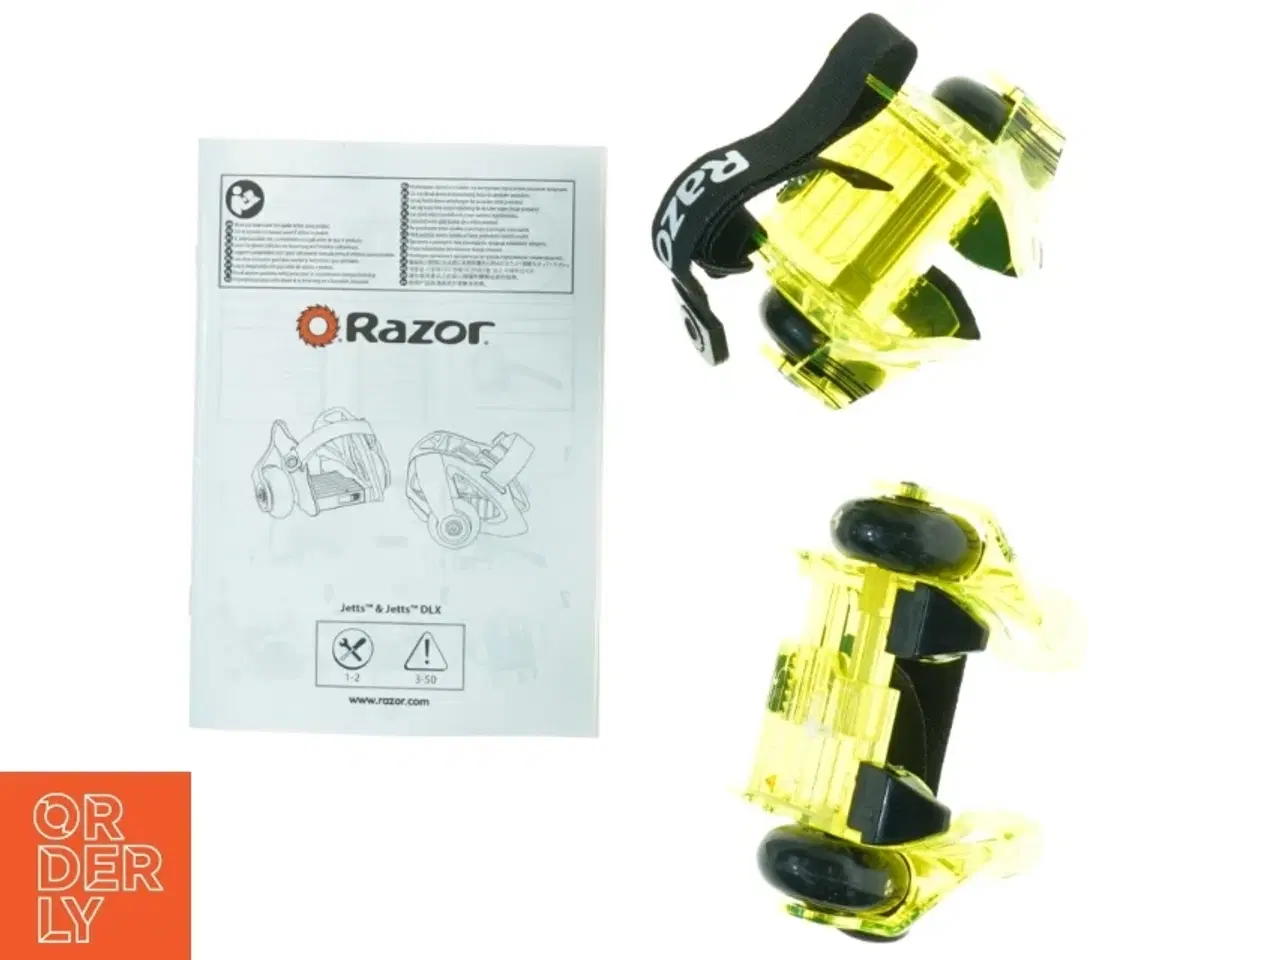 Billede 2 - Razor Jetts hæl-rulleskøjter fra Razor (str. Maks 80 kilo)